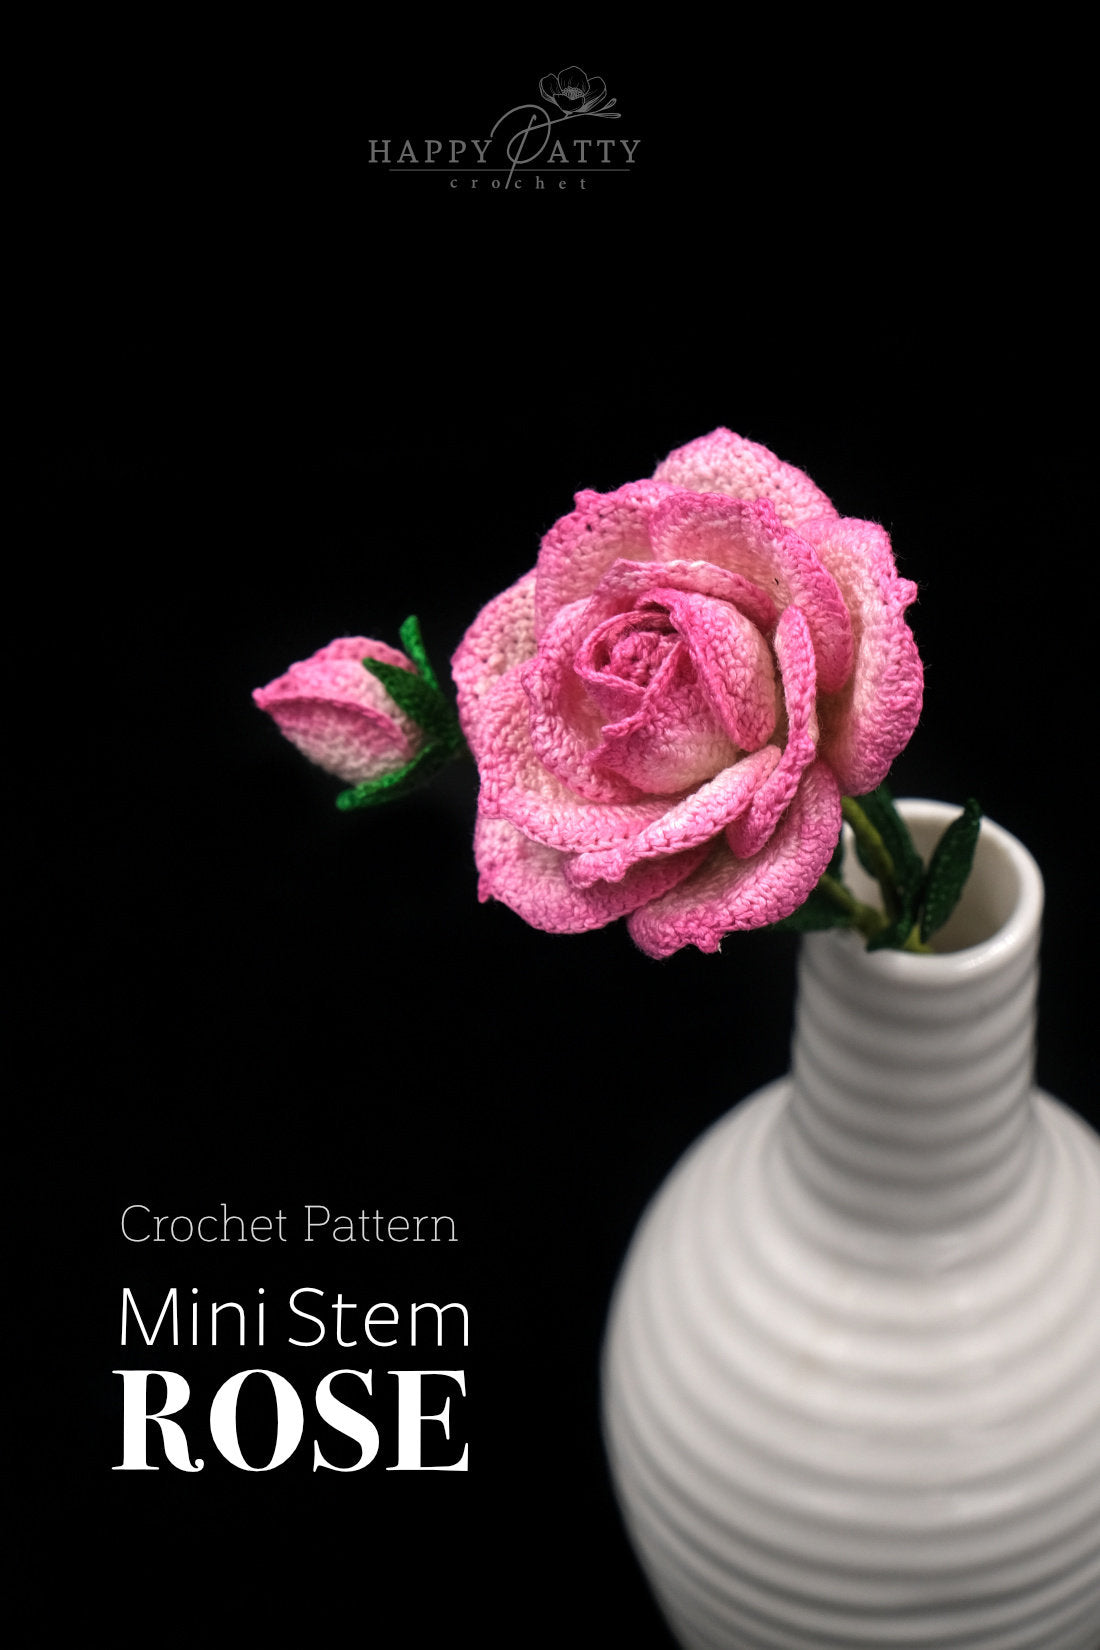 Crochet Mini Stem Rose Pattern - Crochet Pattern for a Small Rose Flower